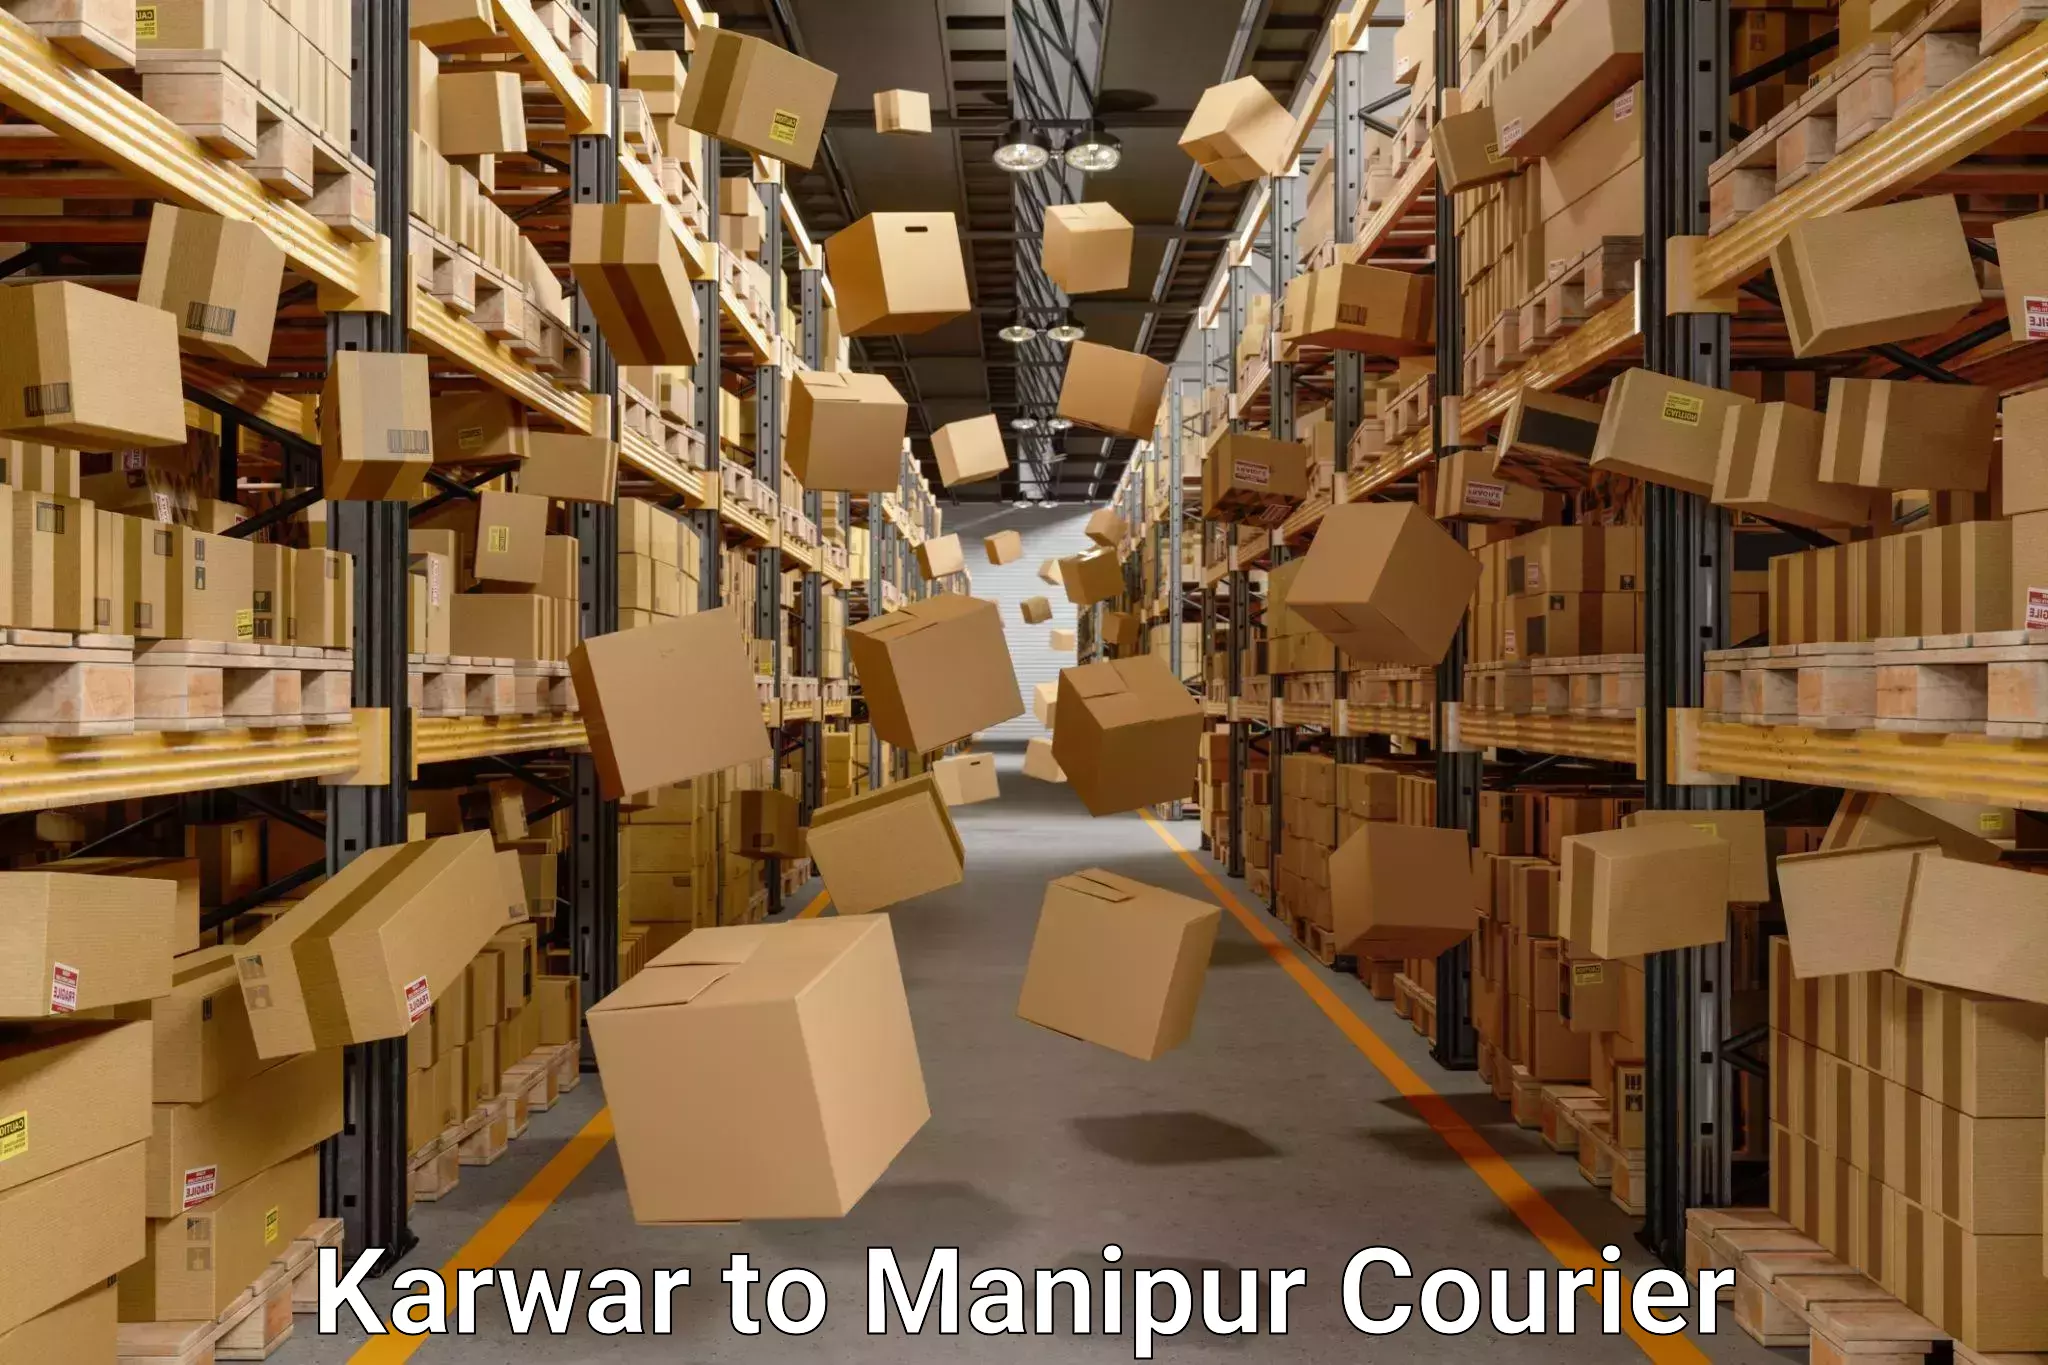 Furniture moving experts Karwar to Manipur